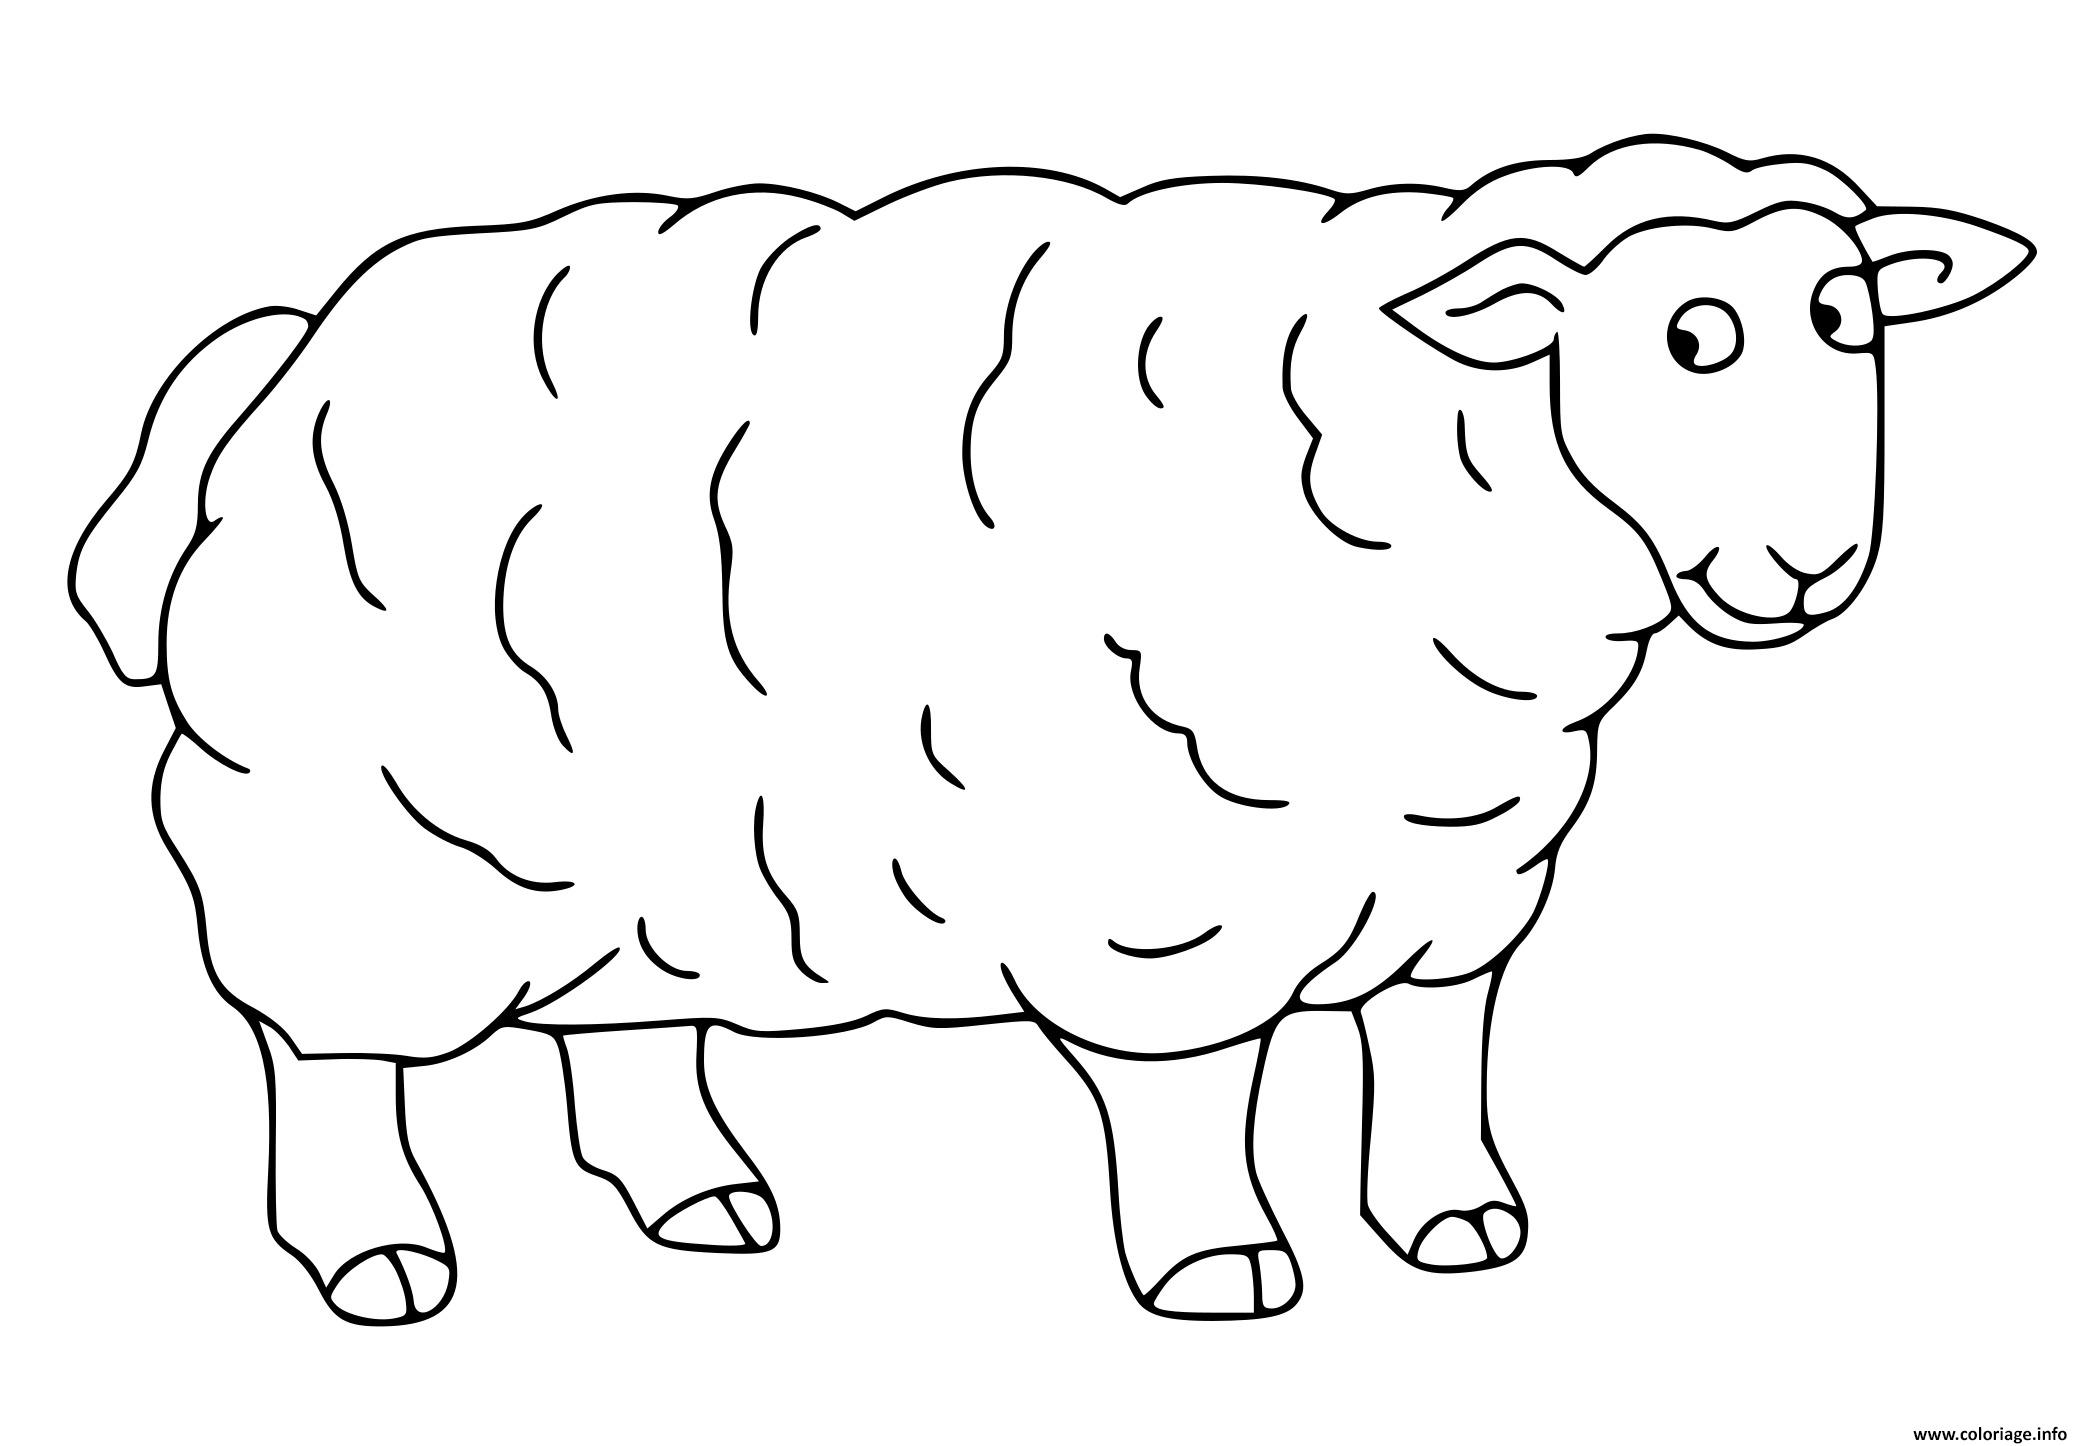 Dessin mouton Coloriage Gratuit à Imprimer